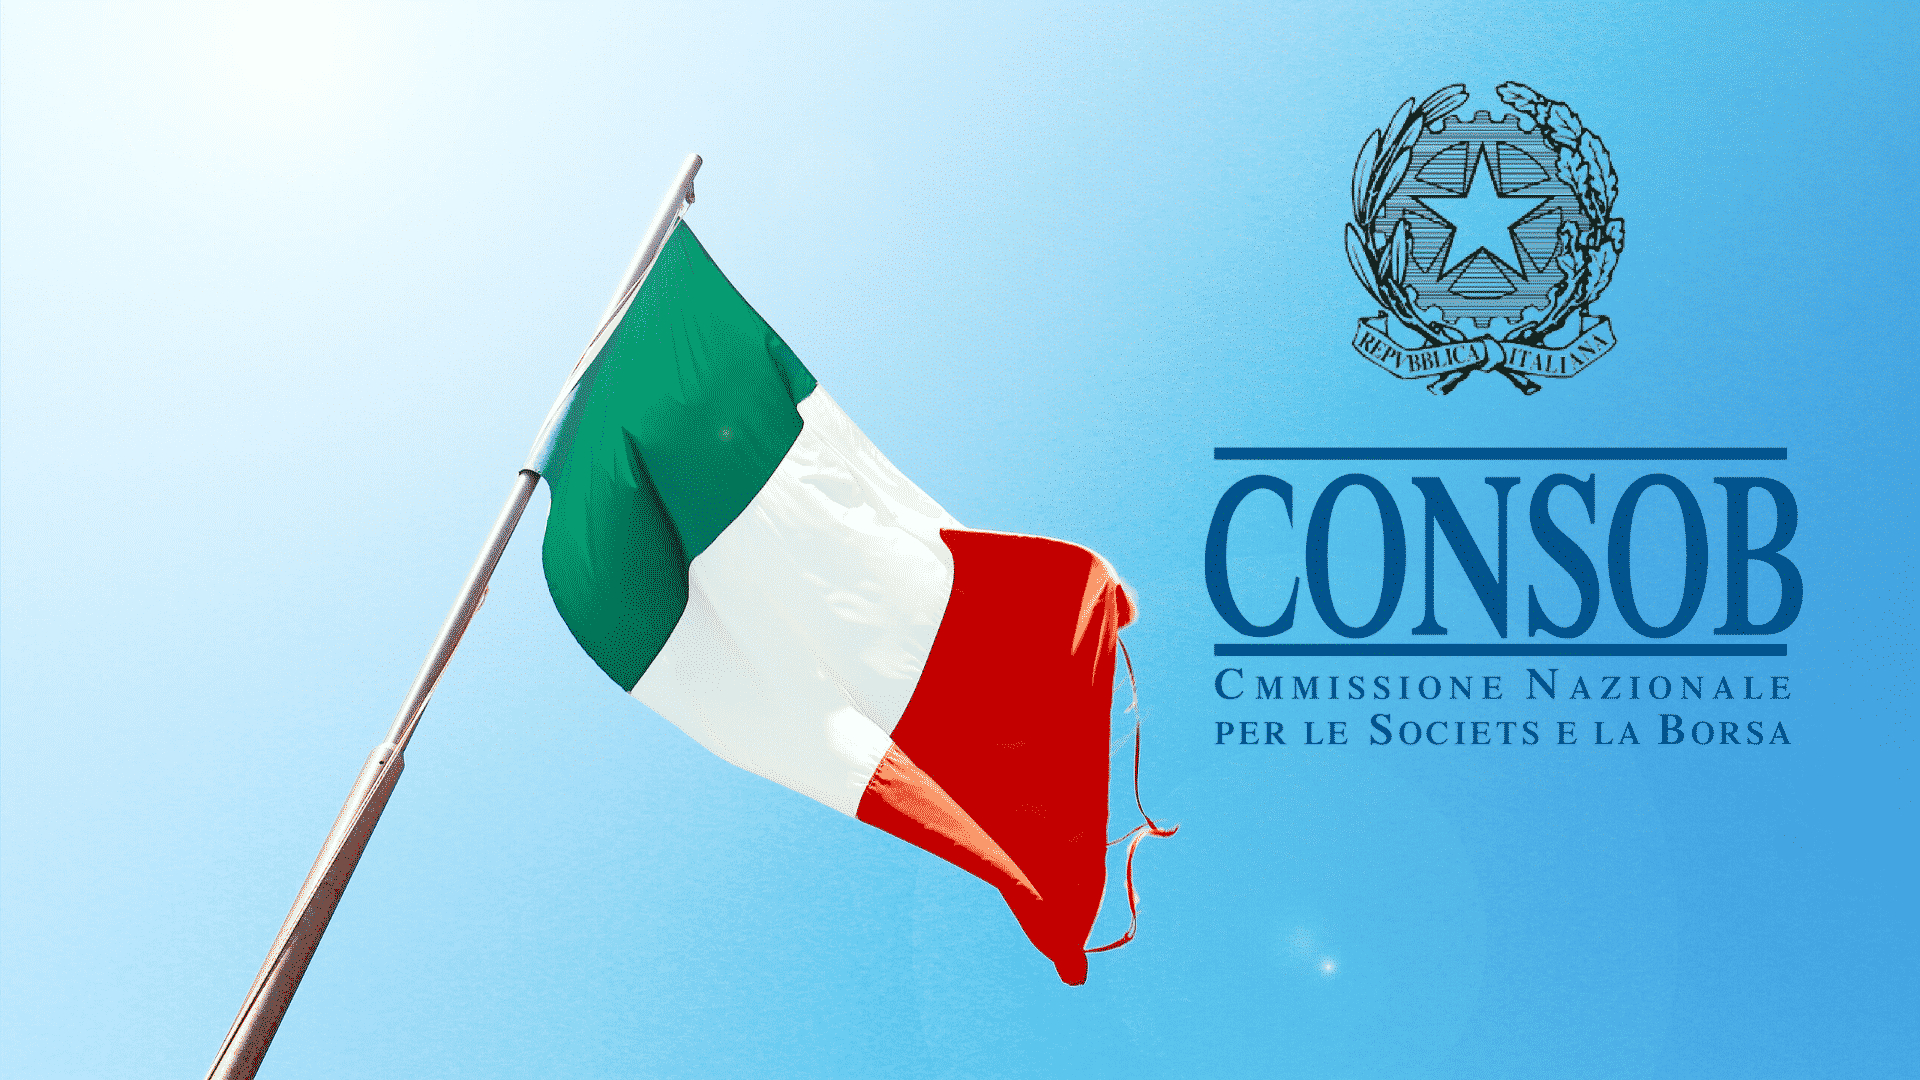 الهيئة التنظيمية الإيطالية كونسوب Consob تتخذ إجراءات صارمة ضد المواقع المالية غير القانونية، ليصل إجمالي الحجب للمواقع إلى 959